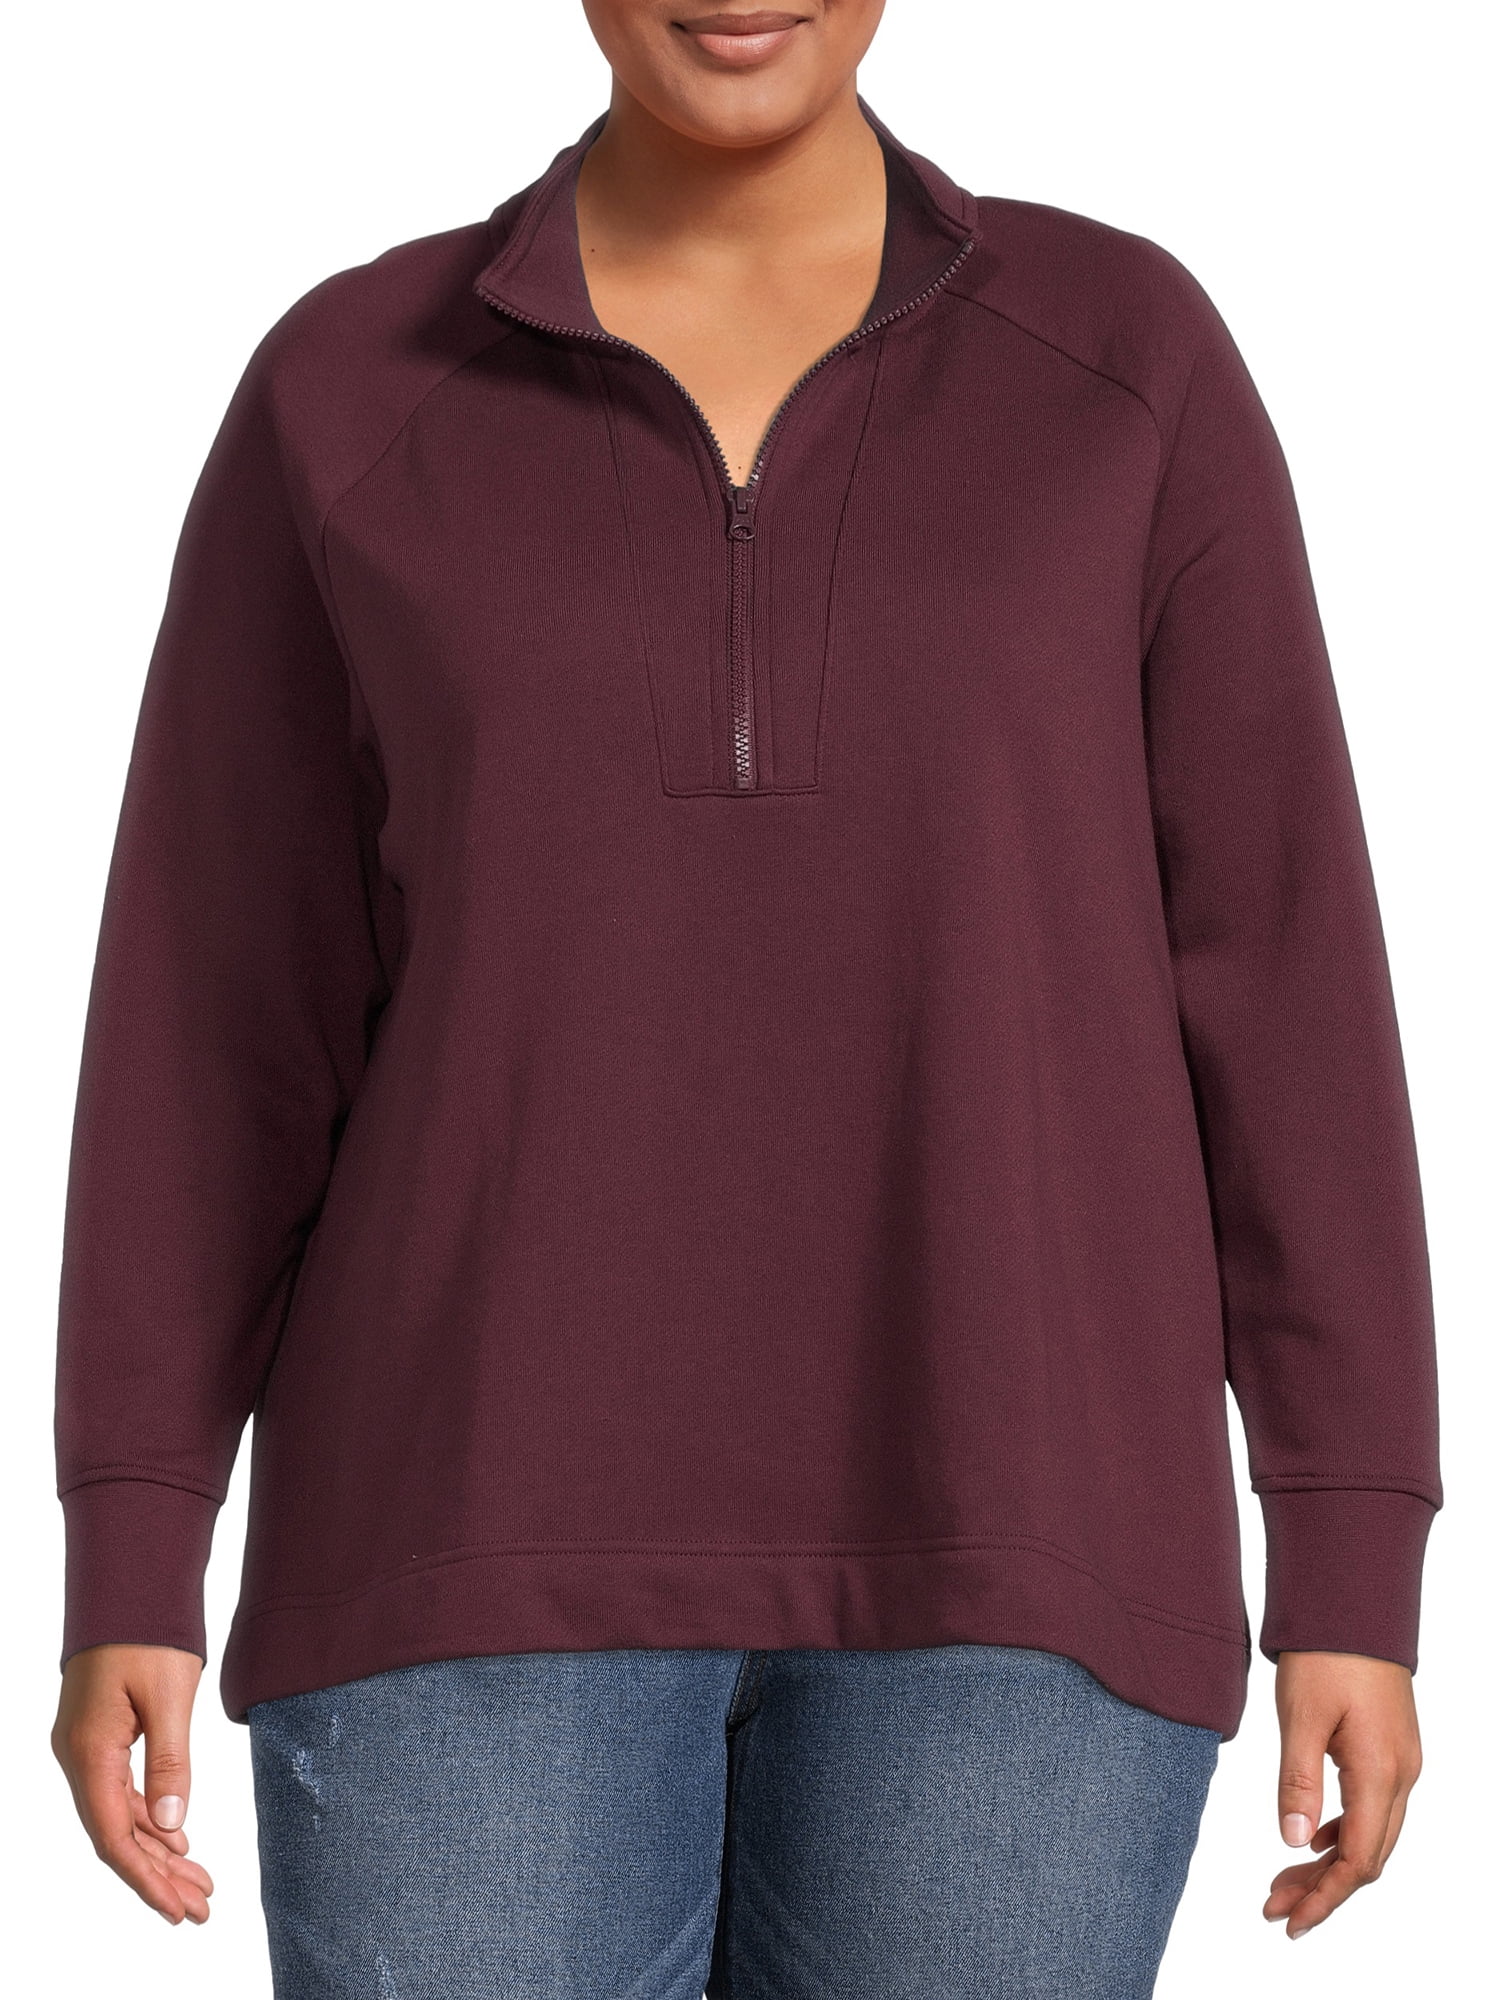 Terra & Sky Women's Plus Size Quarter-Zip Sweatshirt